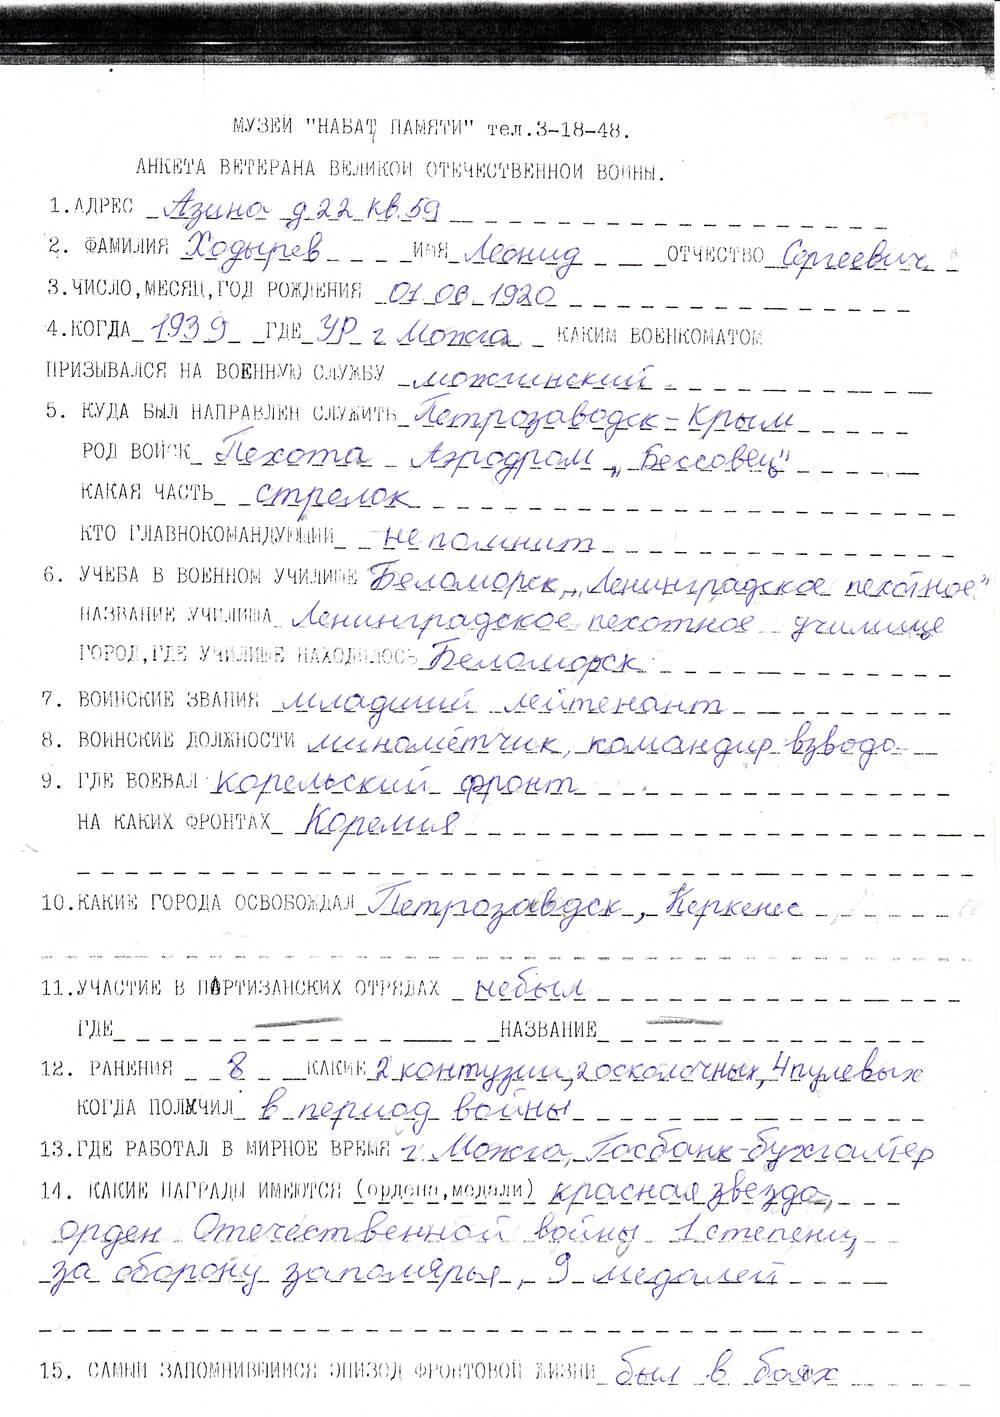 Анкета Ходырева Леонида Сергеевича, ветерана Великой Отечественной войны 1941-1945 гг., с краткими биографическими данными.